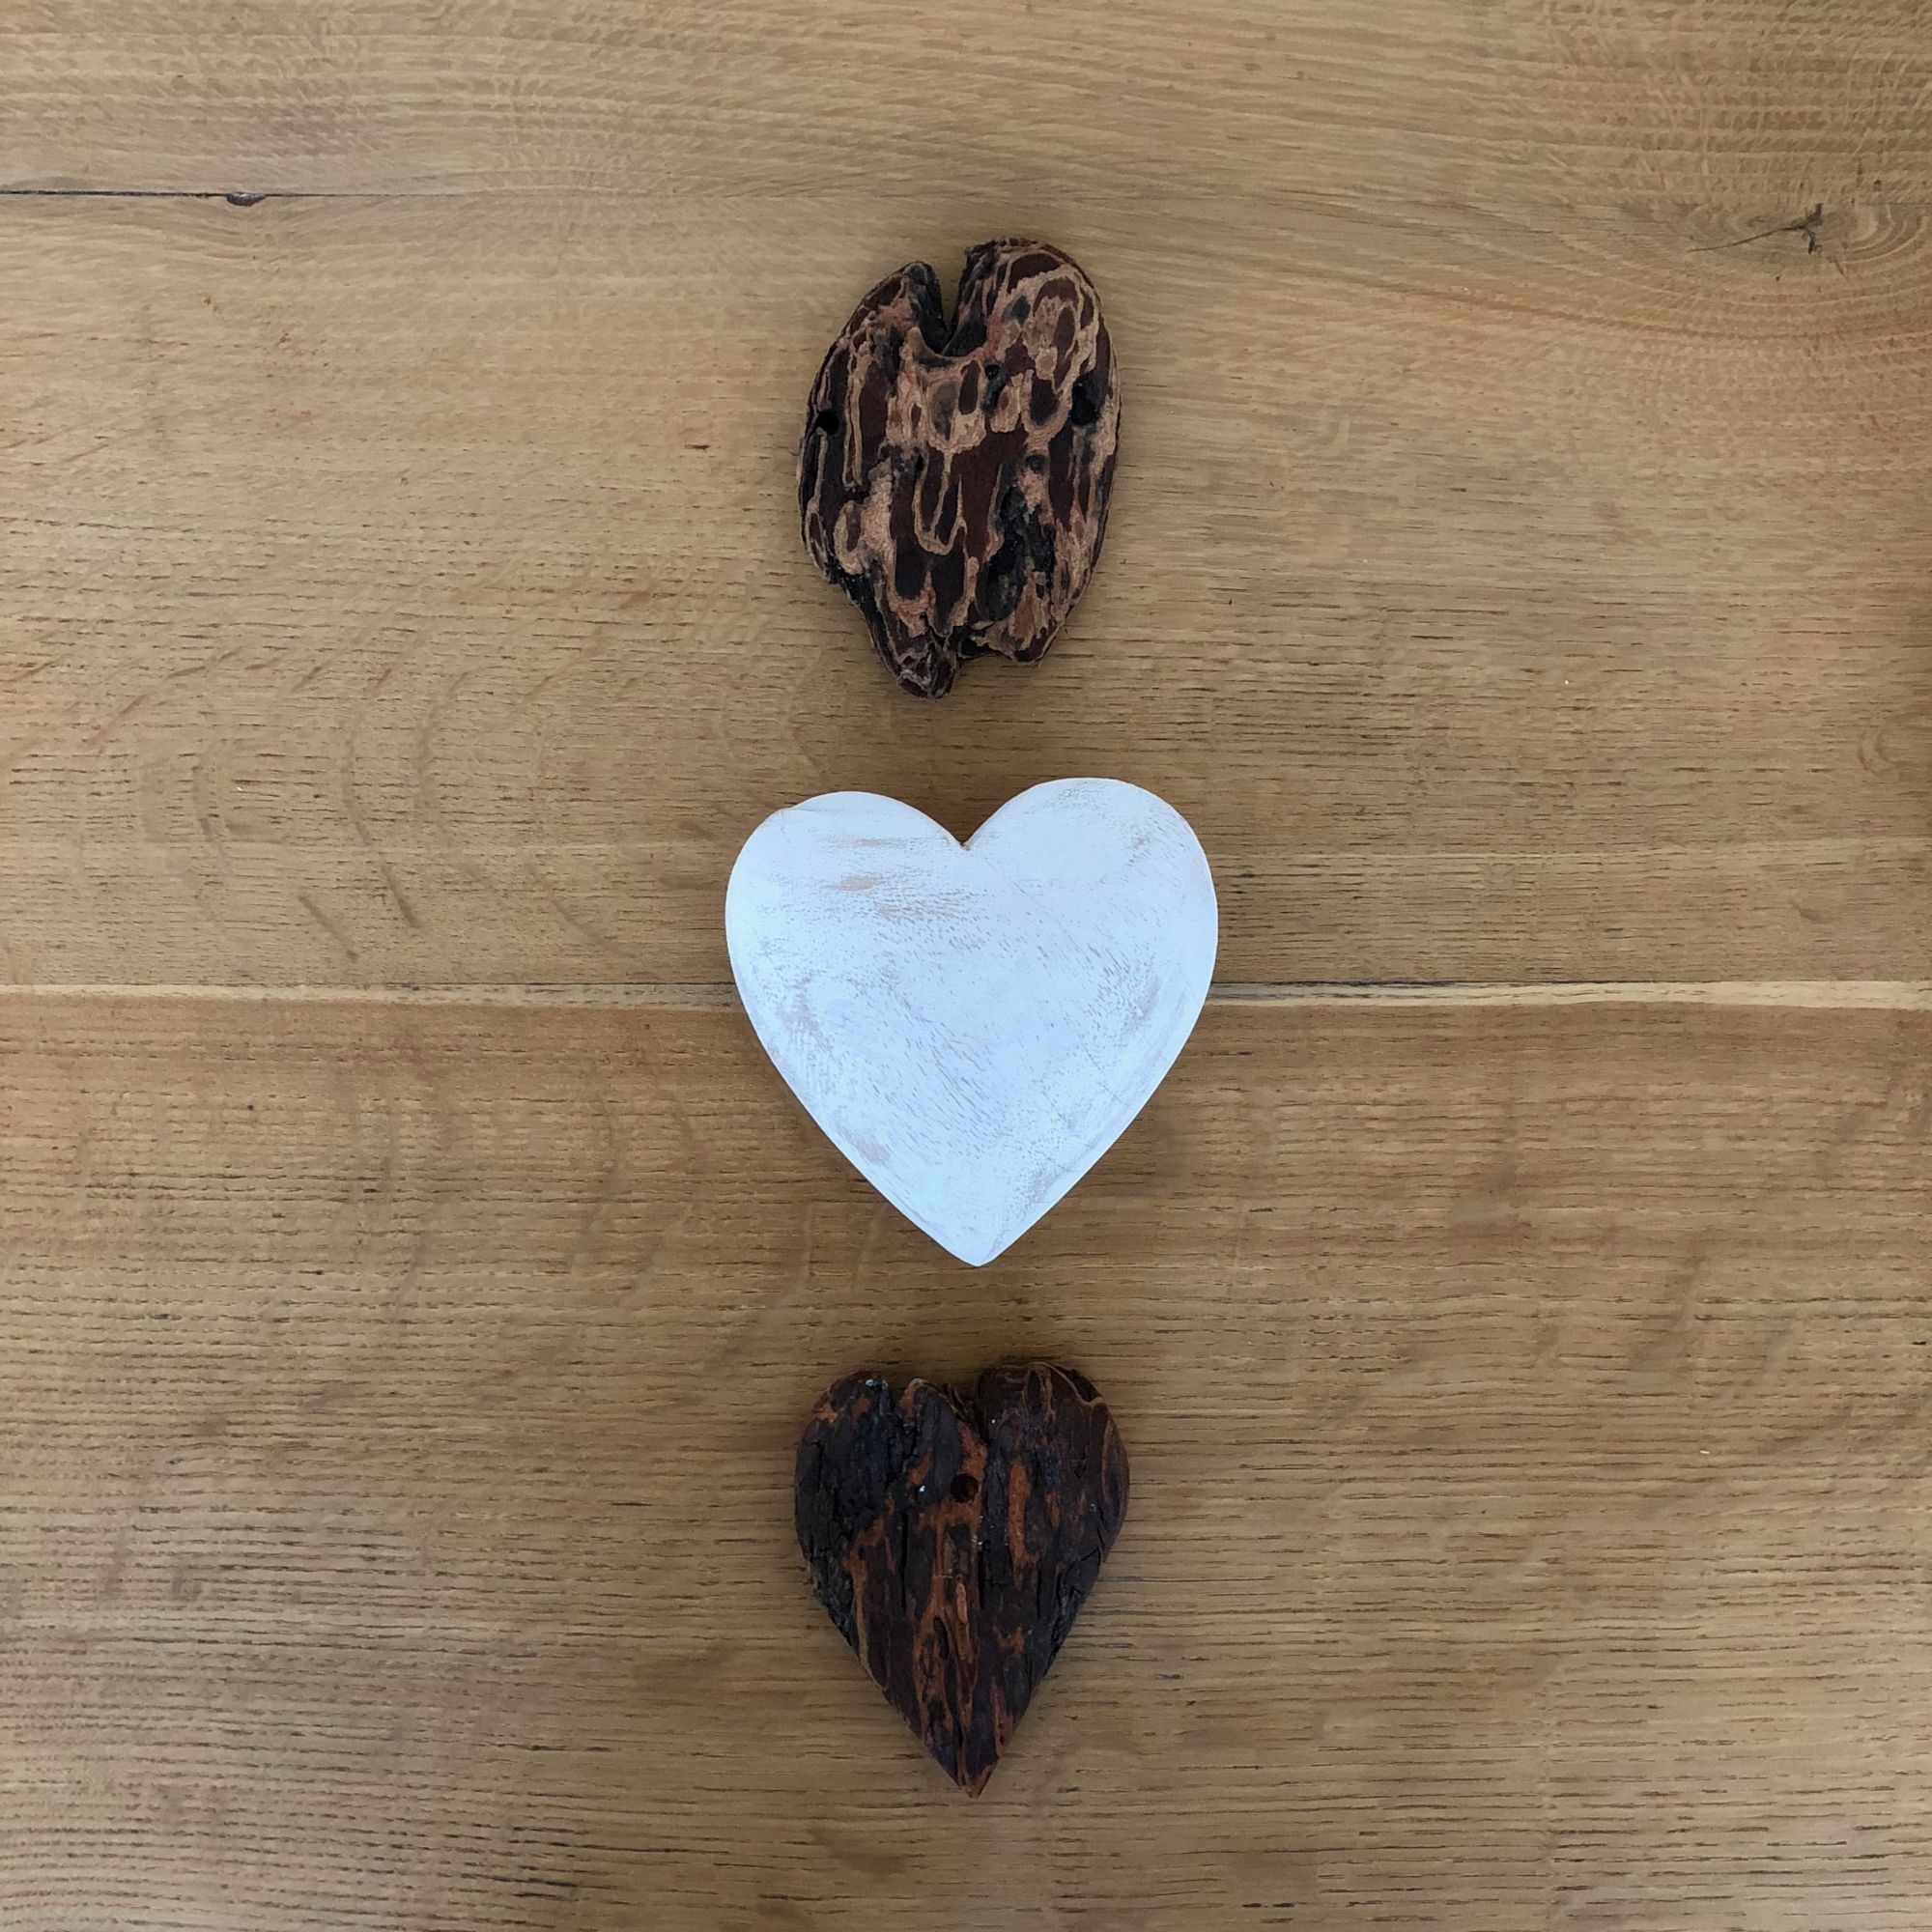 Heart shaped stones